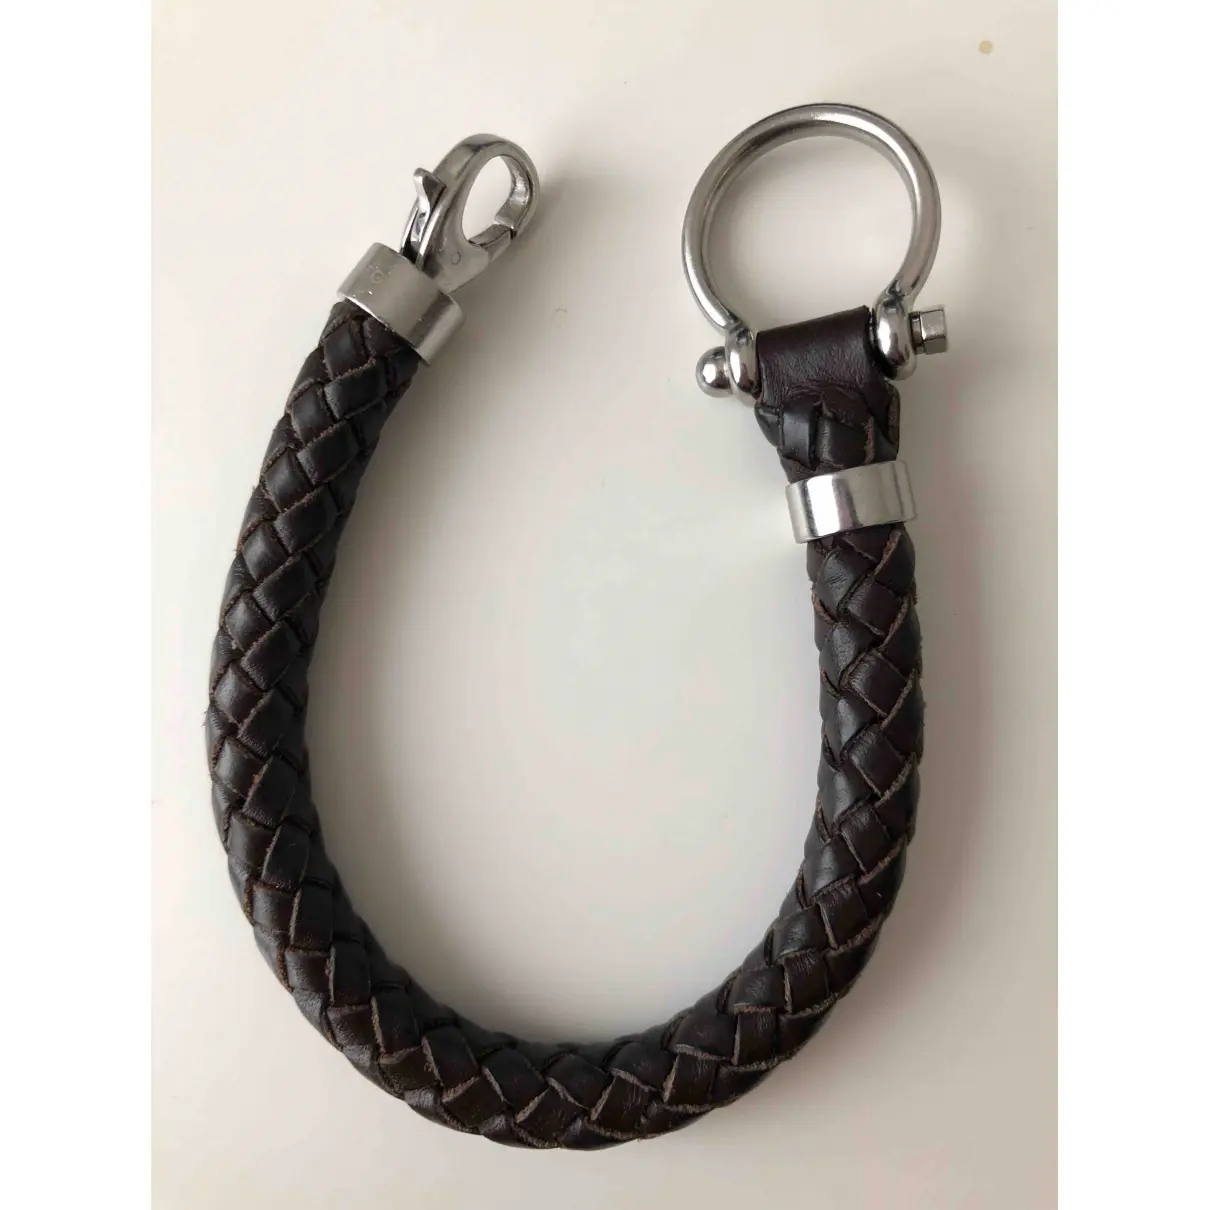 Buy Omega Leather bracelet online